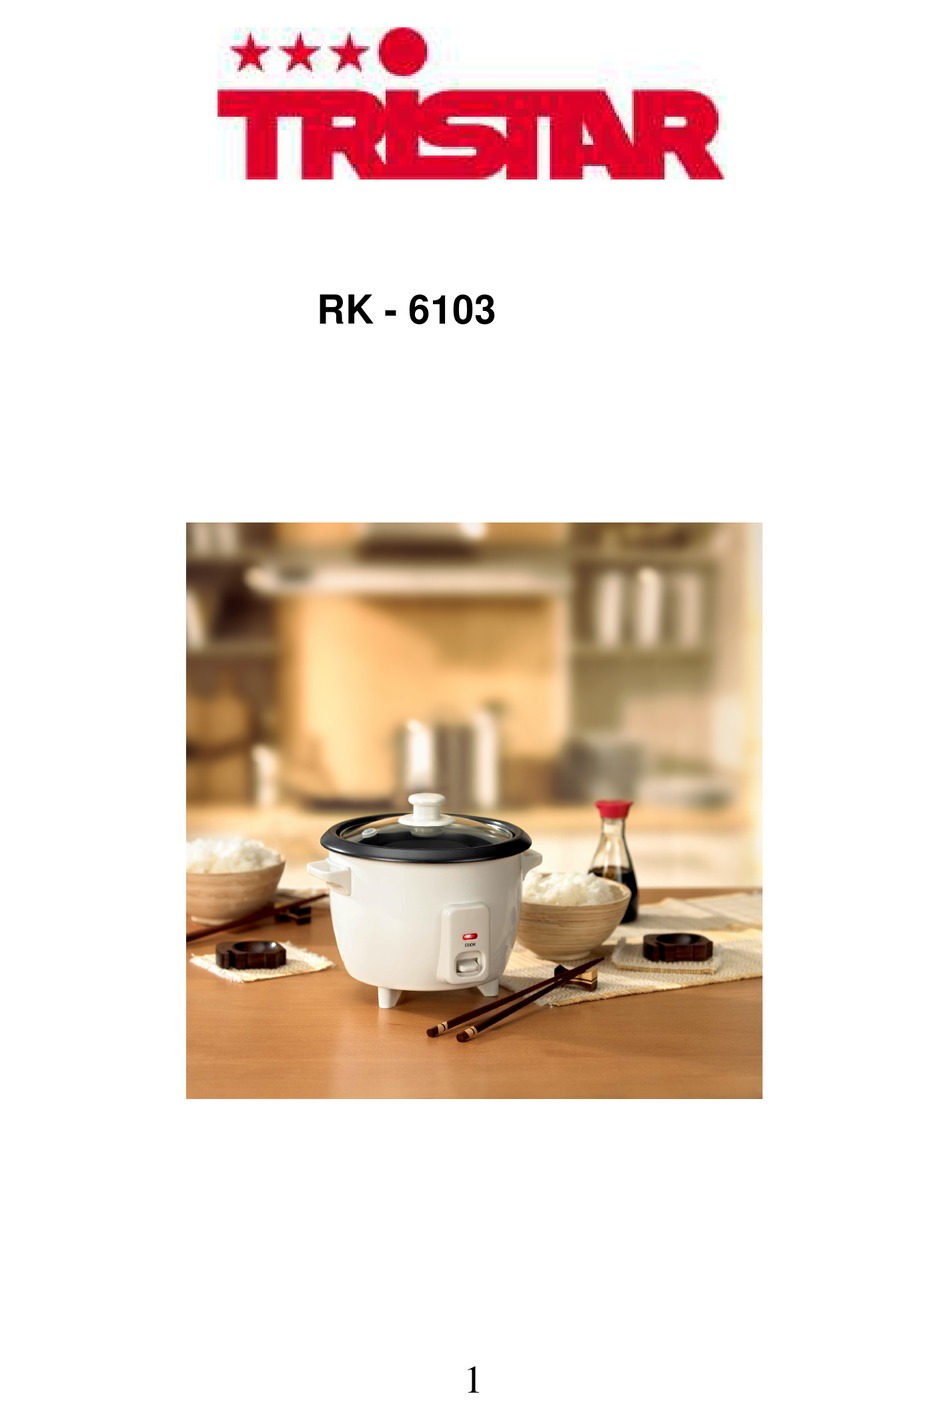 Onschuld hoogtepunt krans Voor De Ingebruikname; Rijst Koken - TriStar RK - 6103 Instructions For Use  Manual [Page 3] | ManualsLib